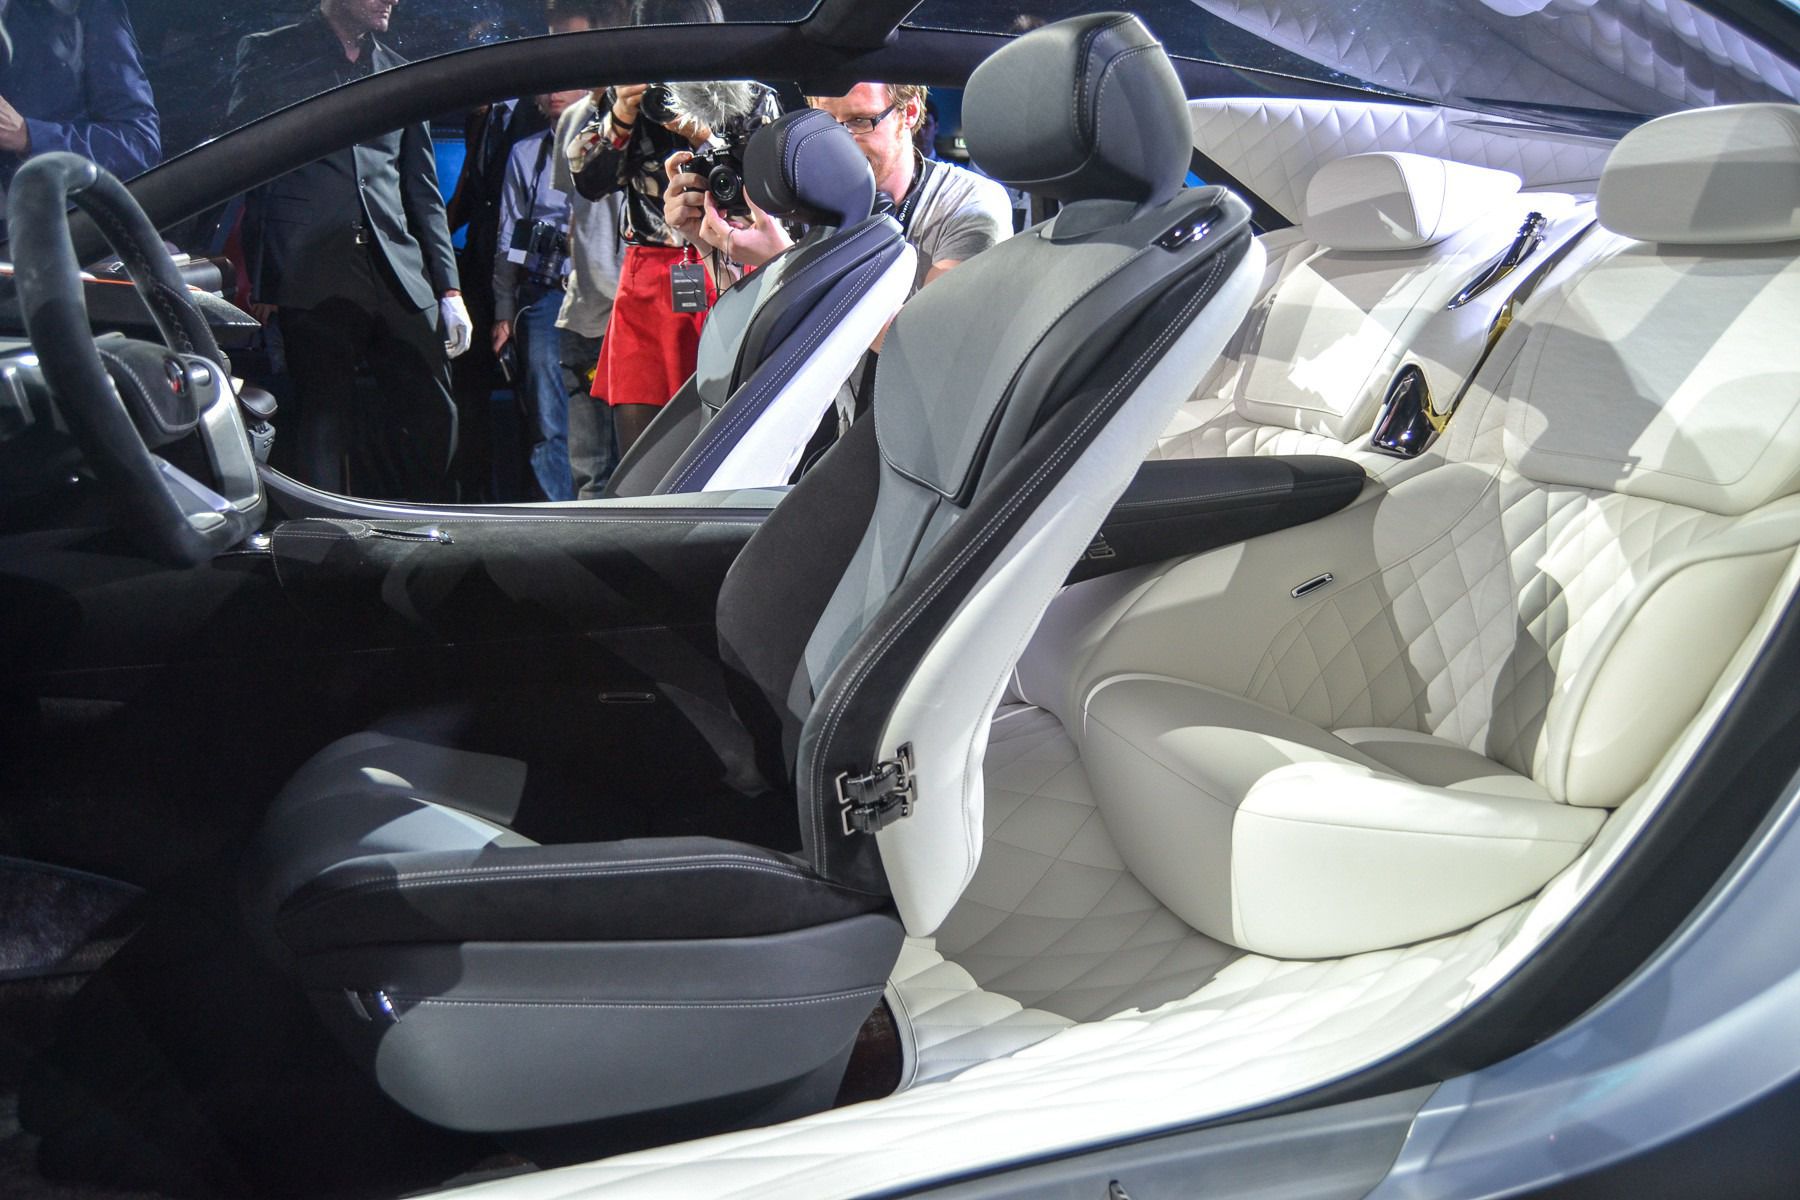 Infiniti офіційно представила в Парижі концепт Q80. На Паризькому автосалоні компанія Infiniti продемонструвала майбутнього «вбивцю» преміальних Mercedes-Benz і BMW. На думку японського виробника серійна версія автомобіля, створена на базі представленого концепту Q80 Inspiration затьмарить собою німецькі бренди, укорінені в цьому сегменті авто.